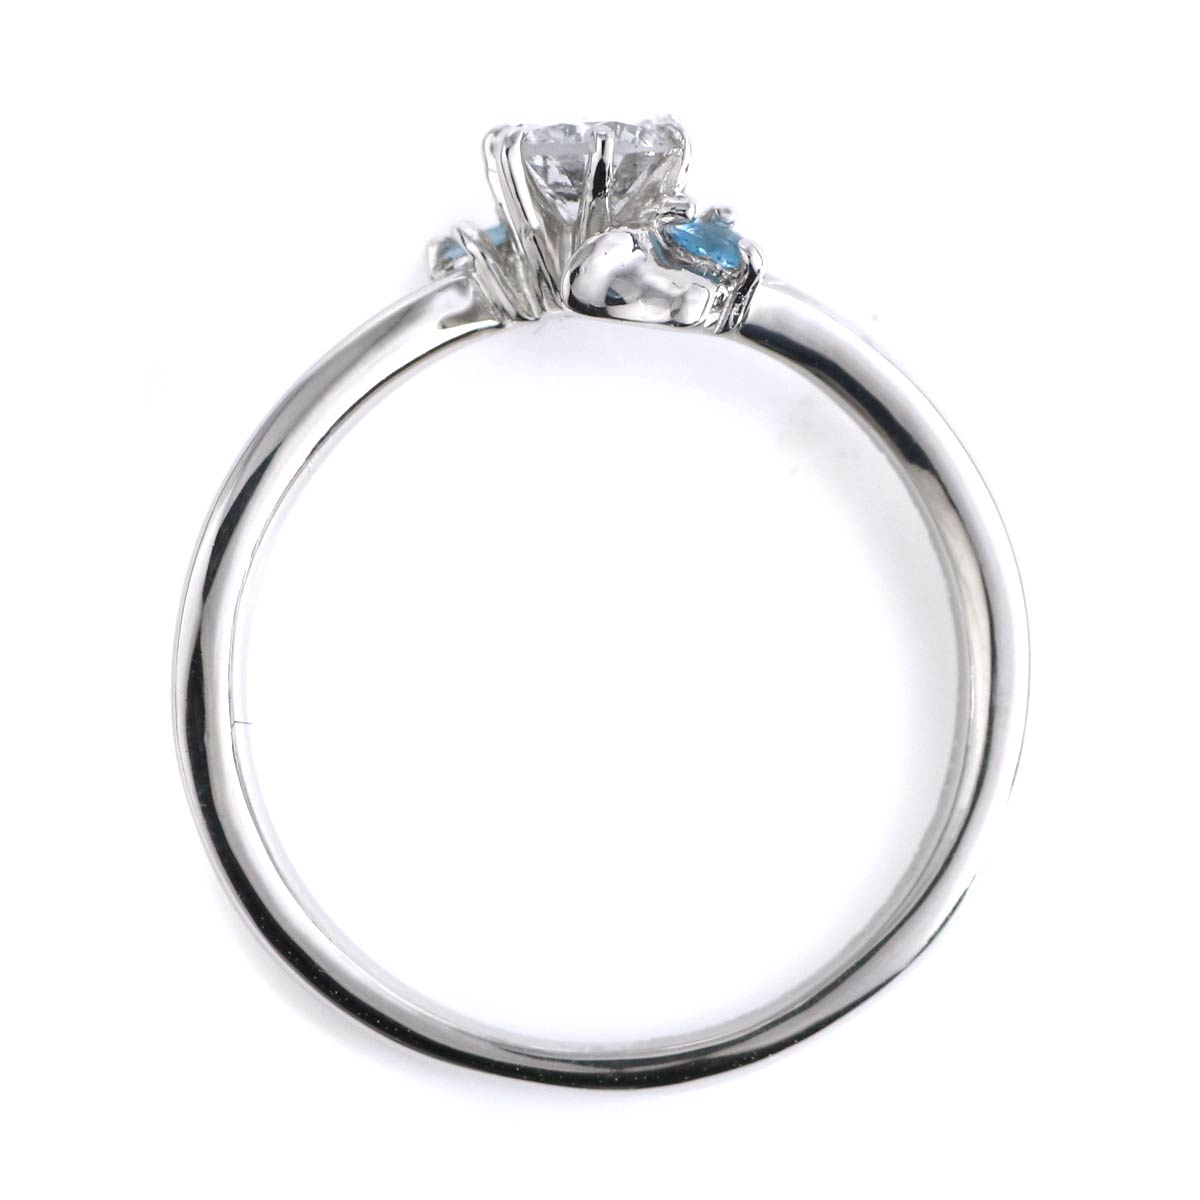 婚約指輪 ダイヤモンド プラチナリング 一粒 大粒 指輪 エンゲージリング 0.5ct プロポーズ用 レディース 人気 ダイヤ 刻印無料 2月 誕生石  アメジスト | H15-1503850 | SUEHIRO